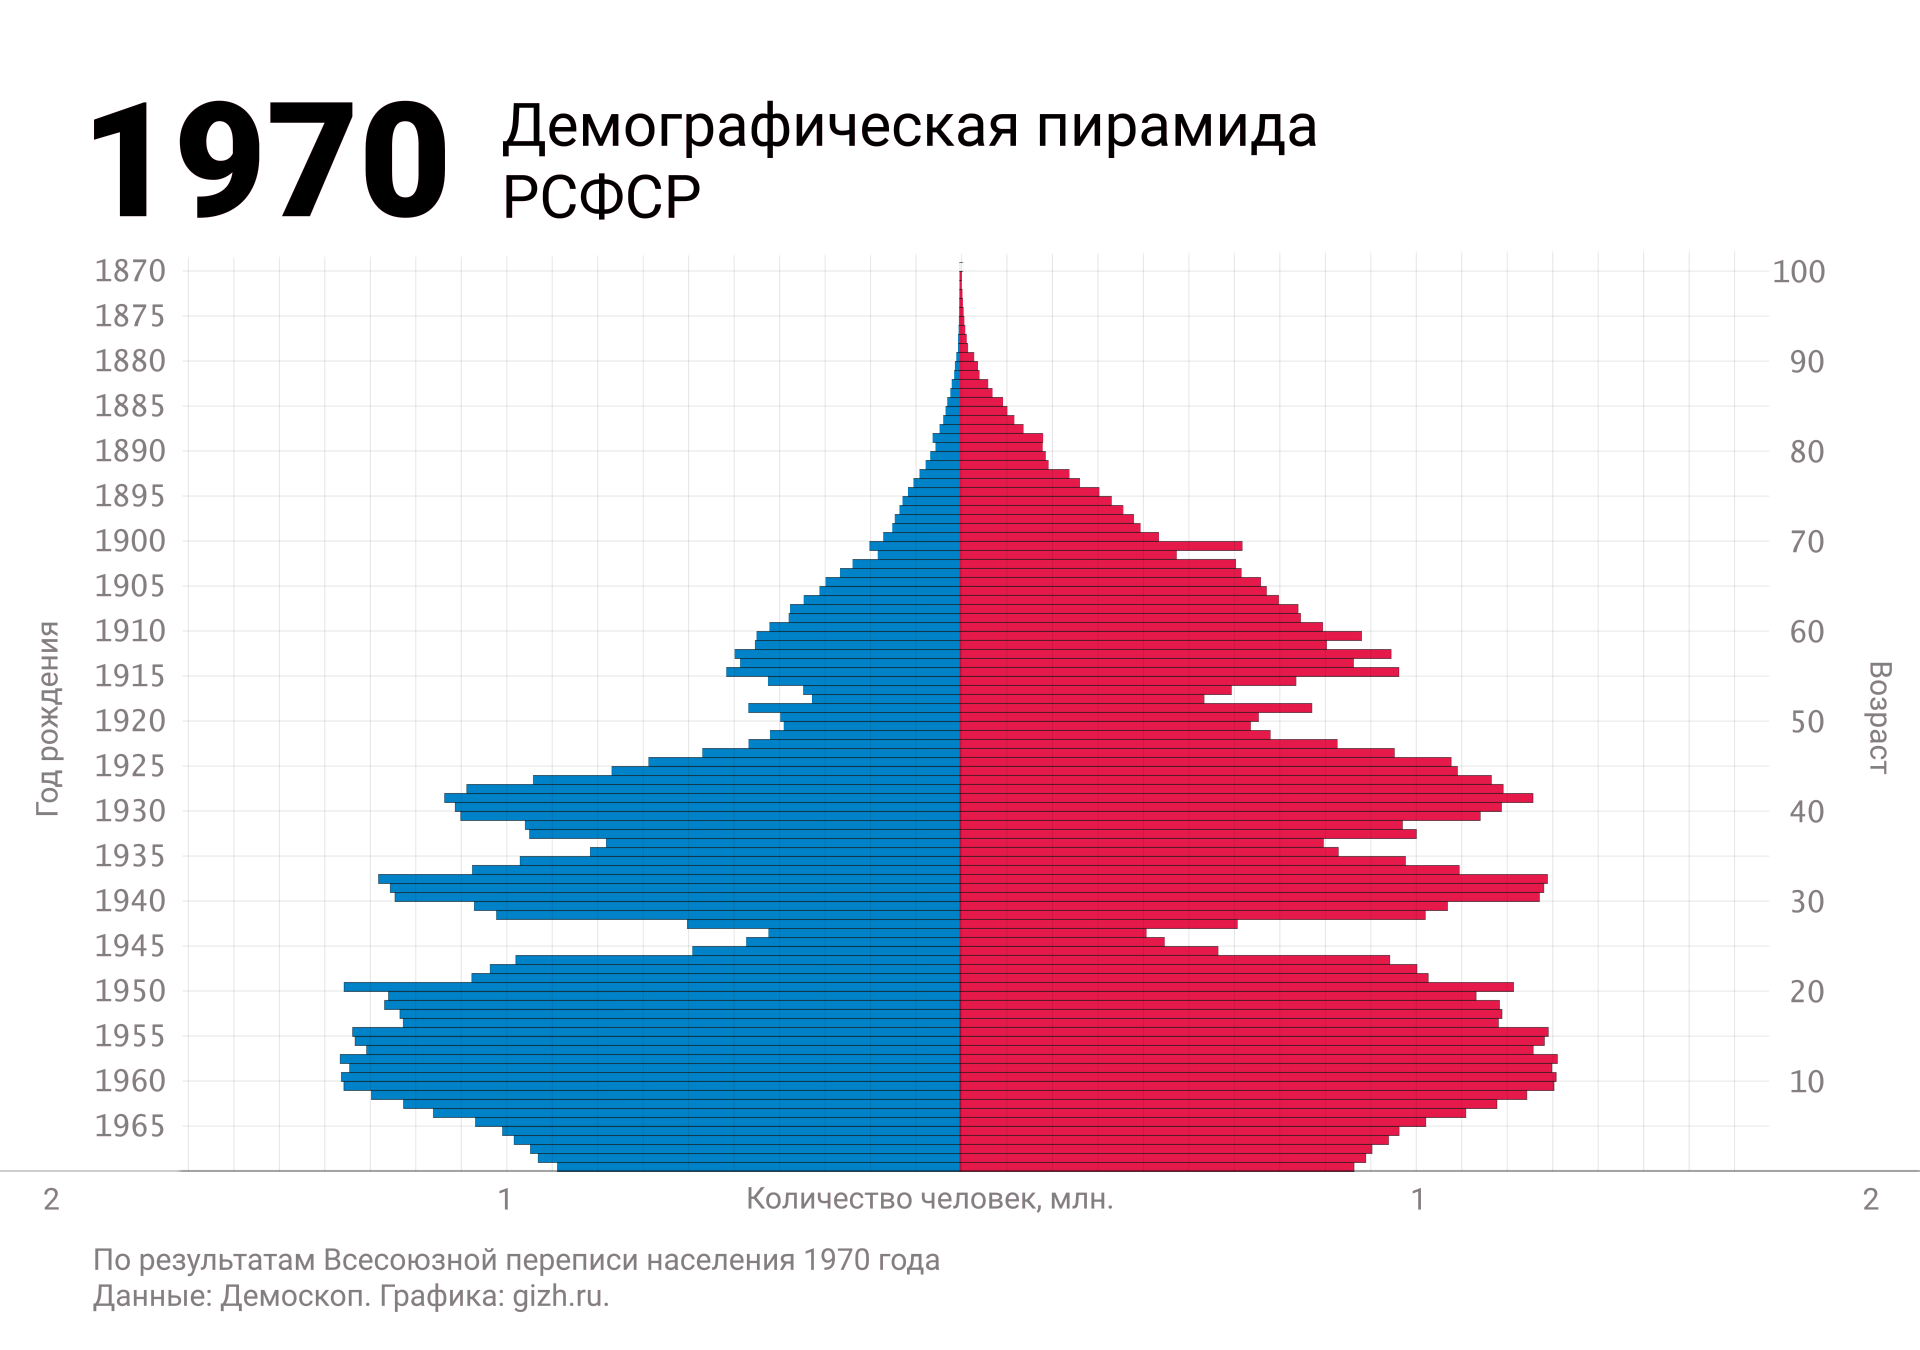 Демографическая (половозрастная) пирамида России (СССР, РСФСР) по переписи 1970